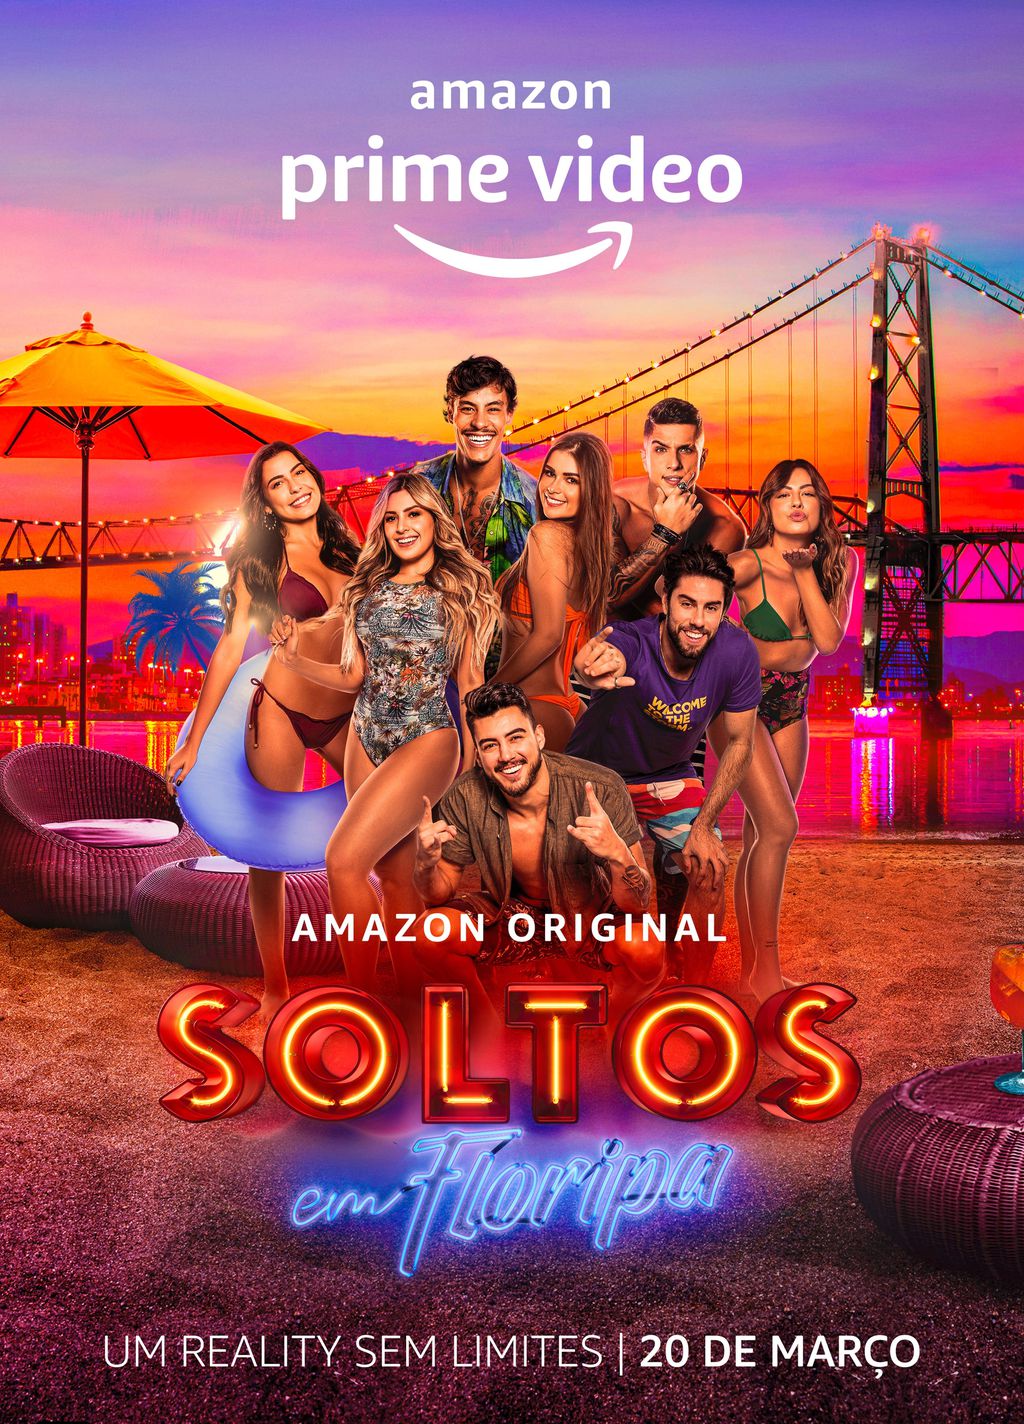 Amazon Prime Video anuncia novo reality show Soltos em Floripa